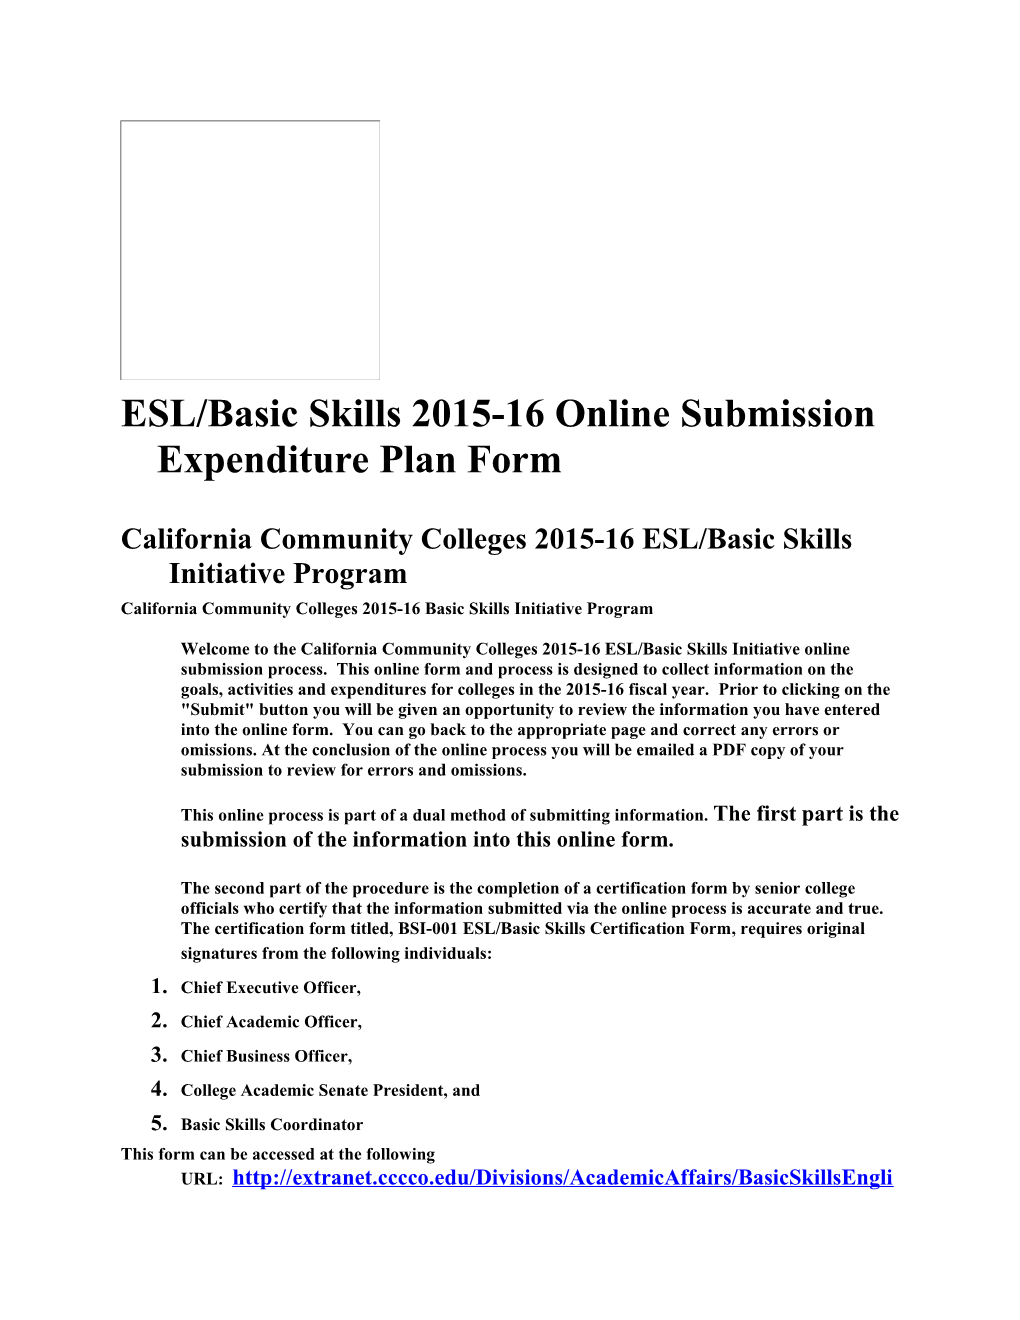 ESL/Basic Skills 2015-16 Online Submission Expenditure Plan Form